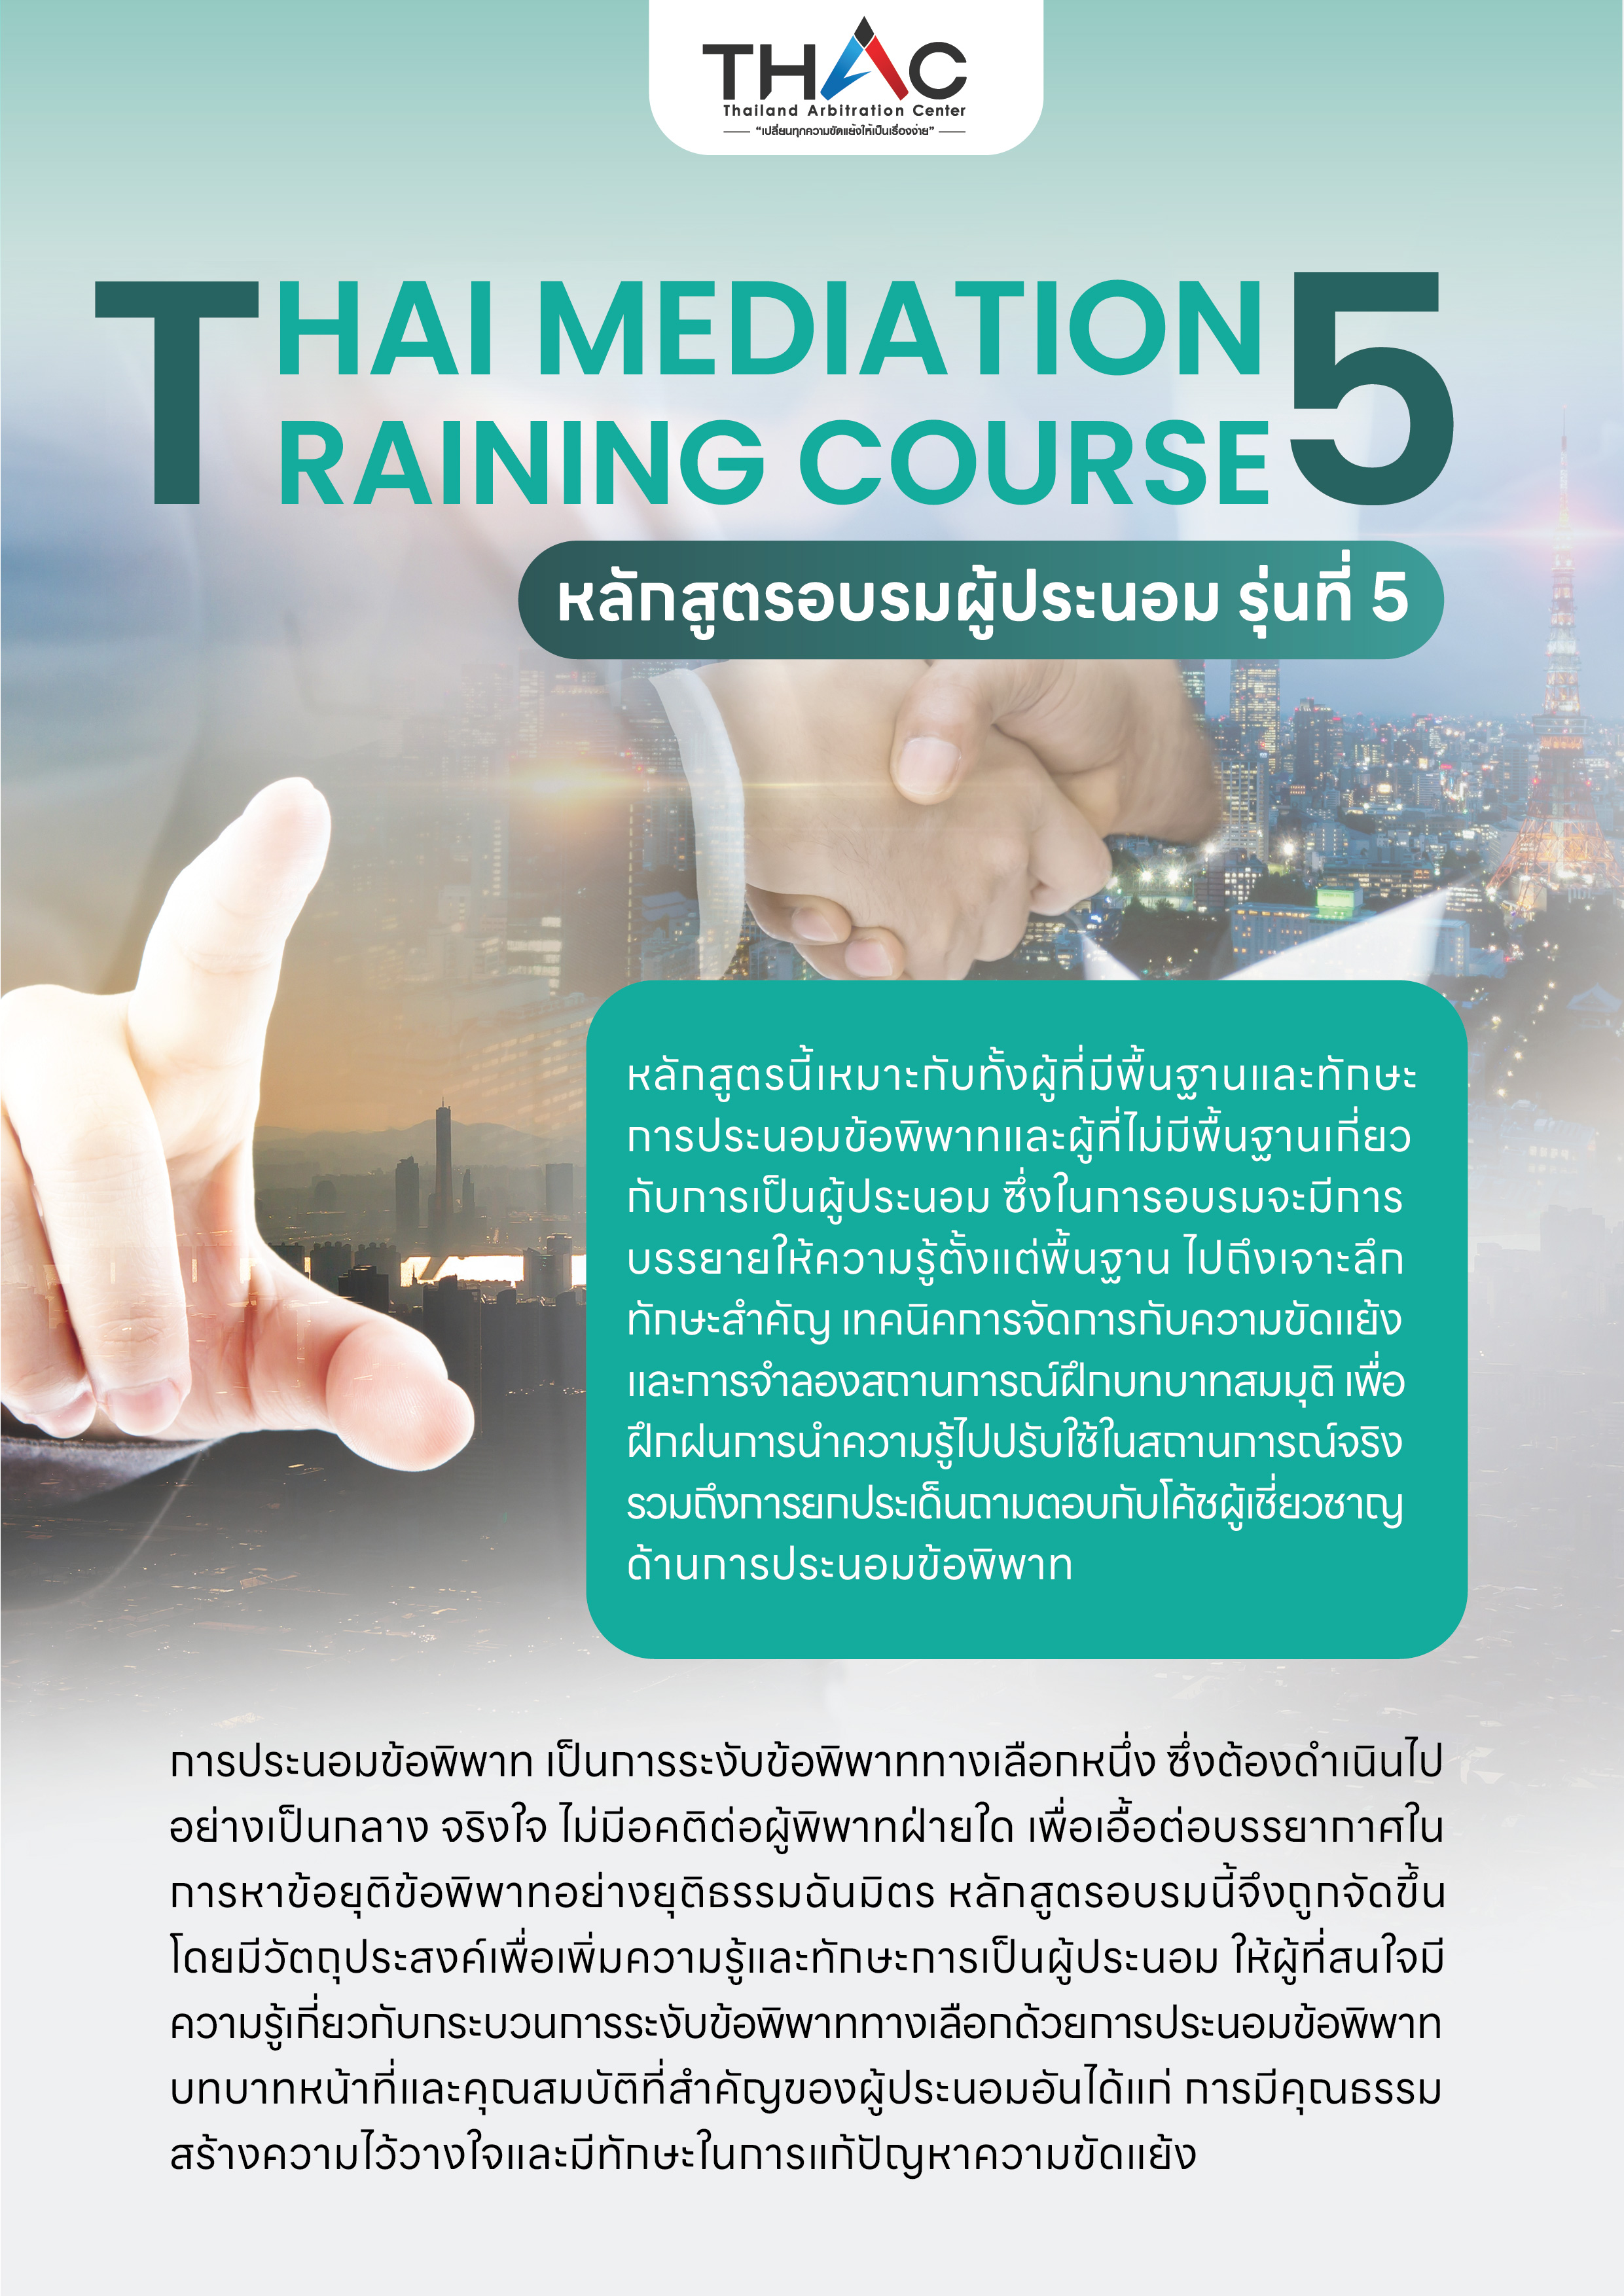 หลักสูตรอบรมผู้ประนอม รุ่นที่ 5  (Thai Mediation Training Course 5)